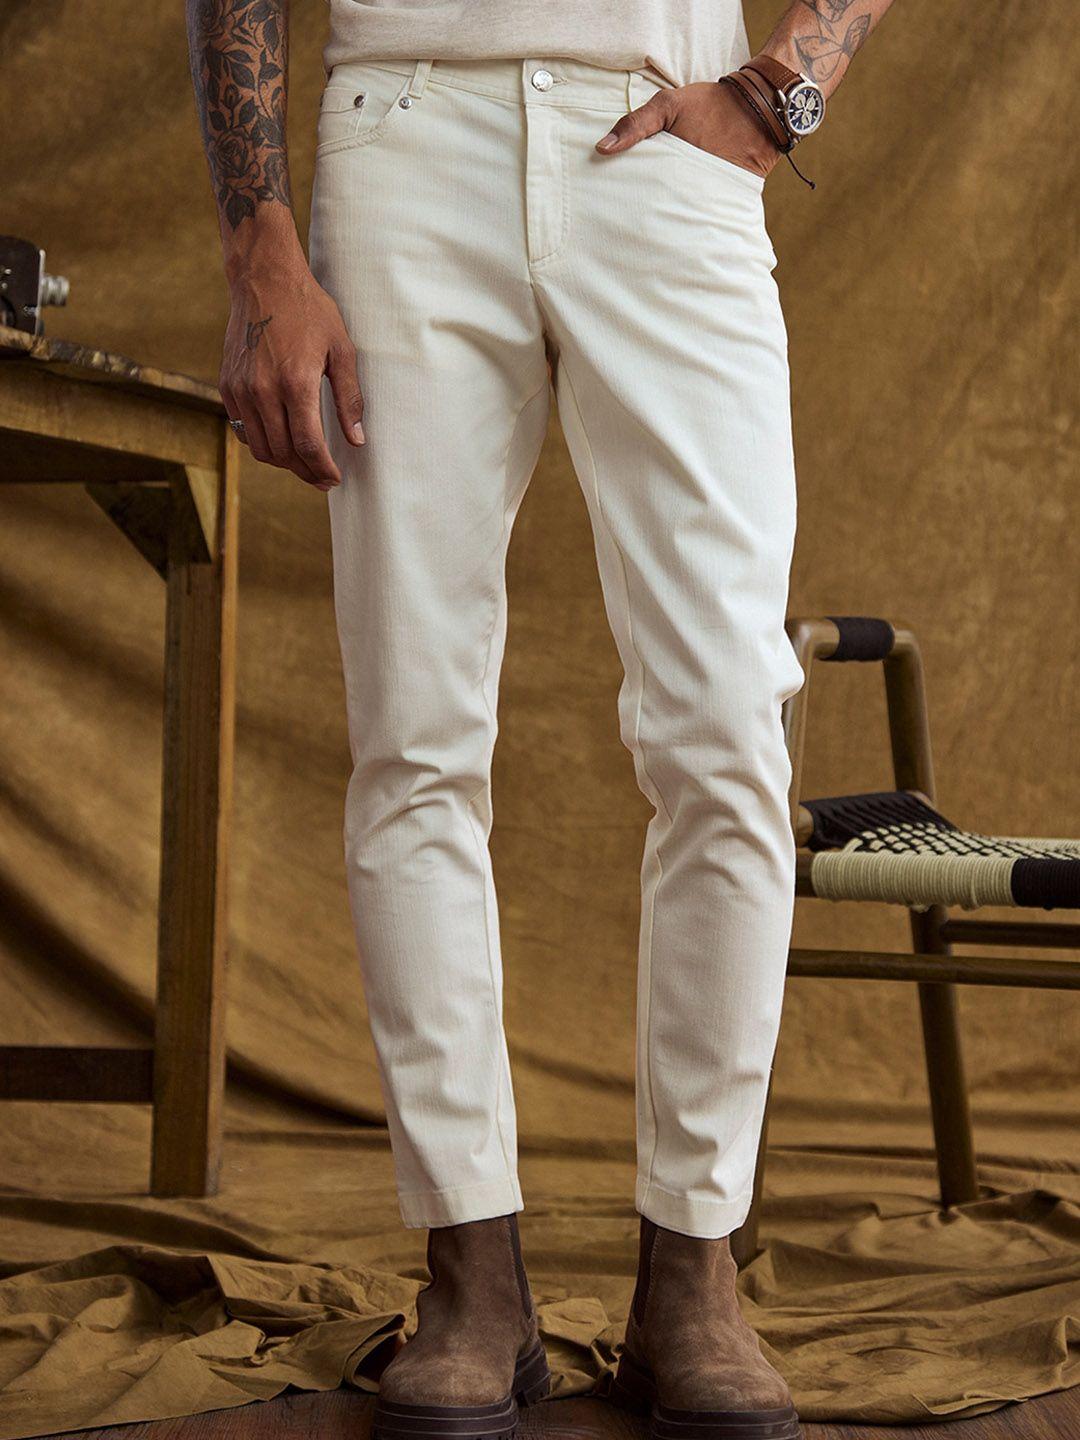 andamen-men-comfort-stretchable-cotton-jeans